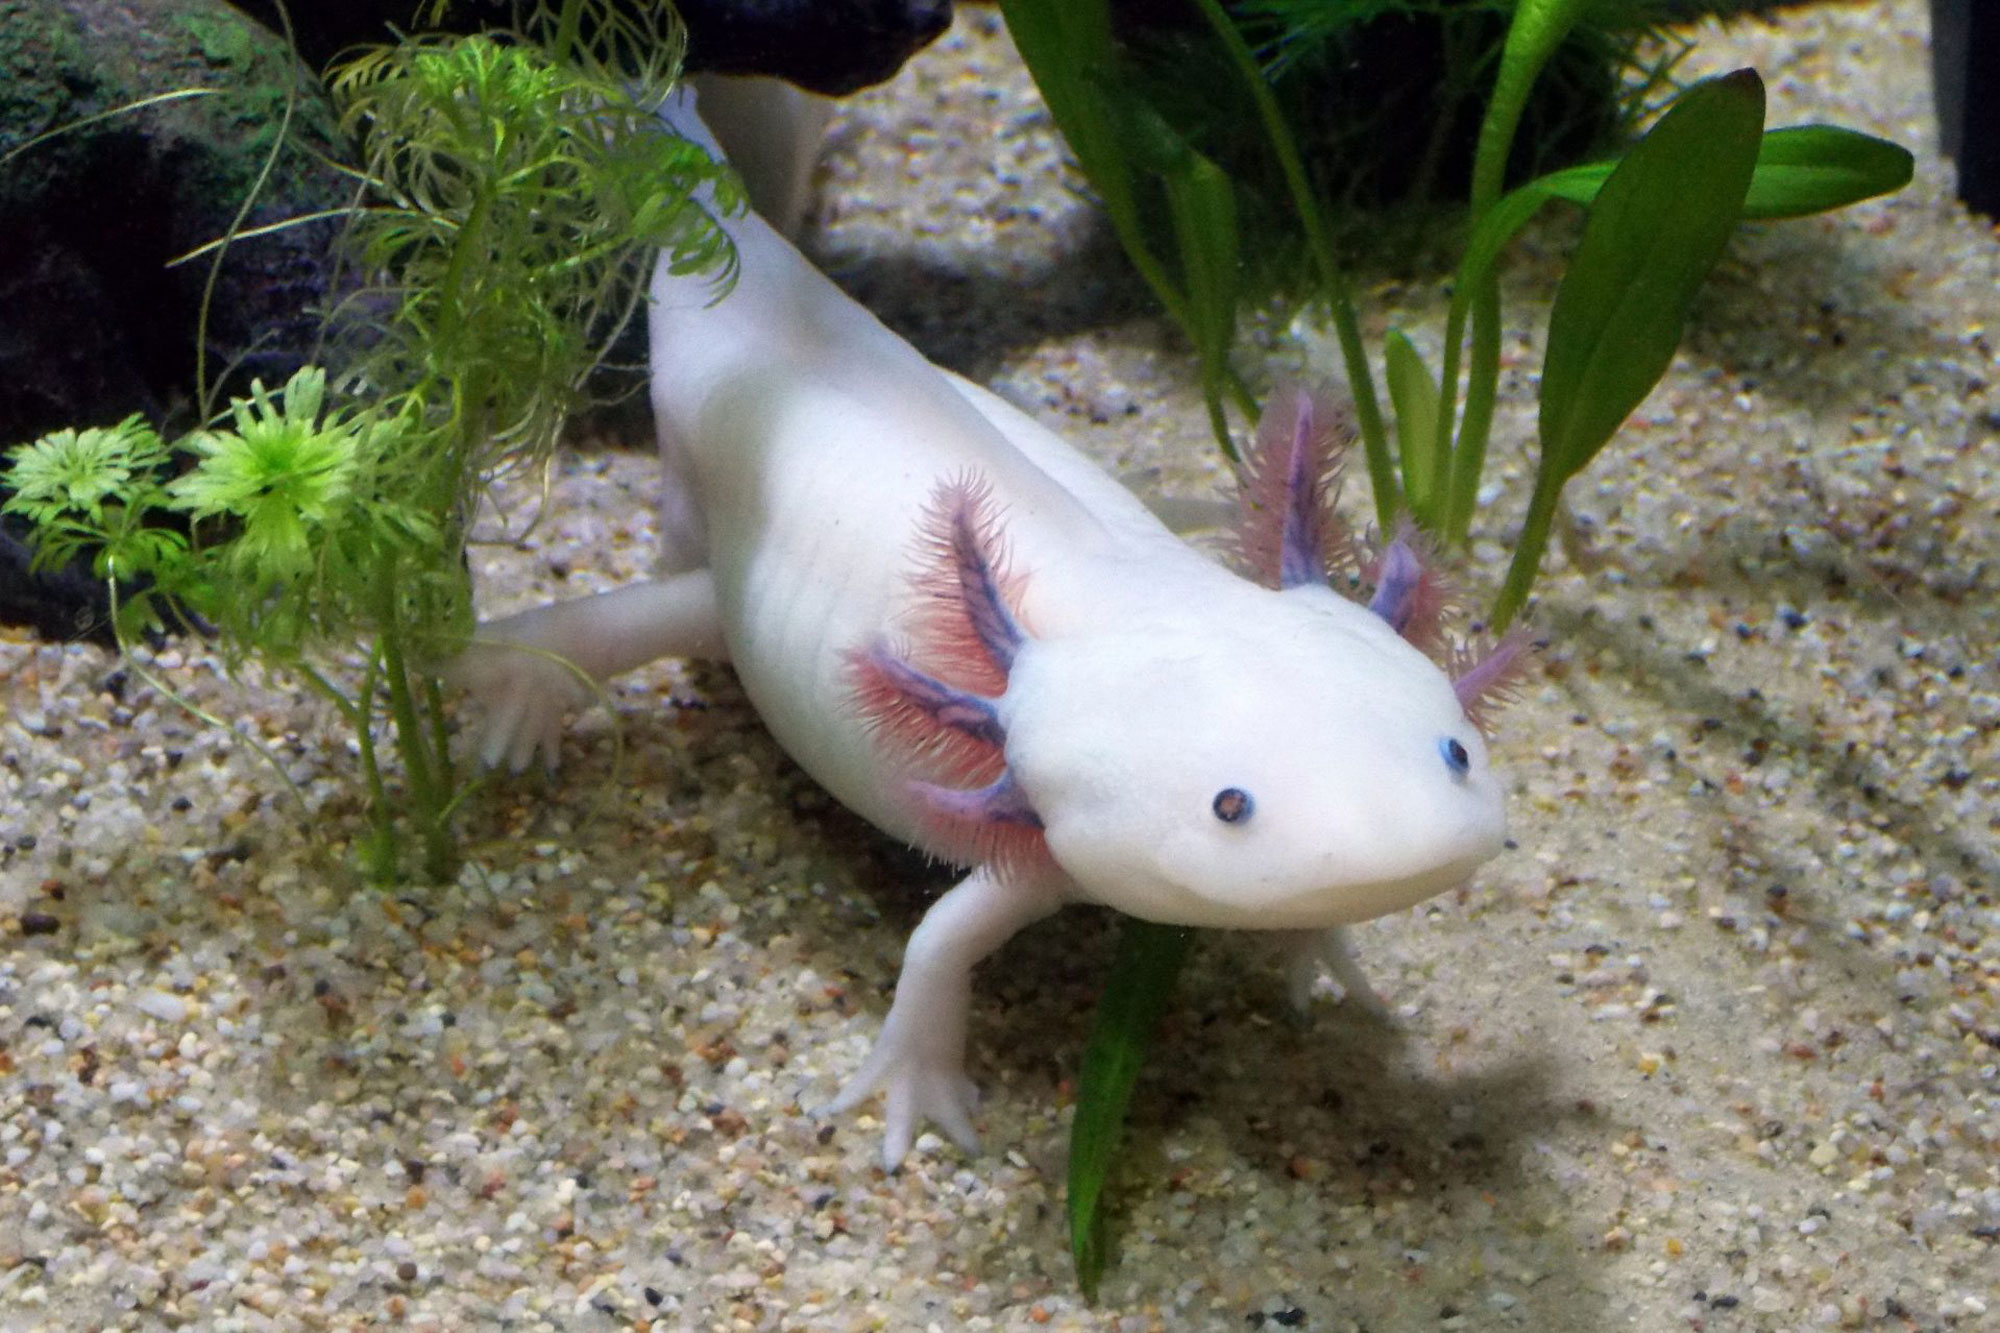 White Axololotl in aquatic habitat